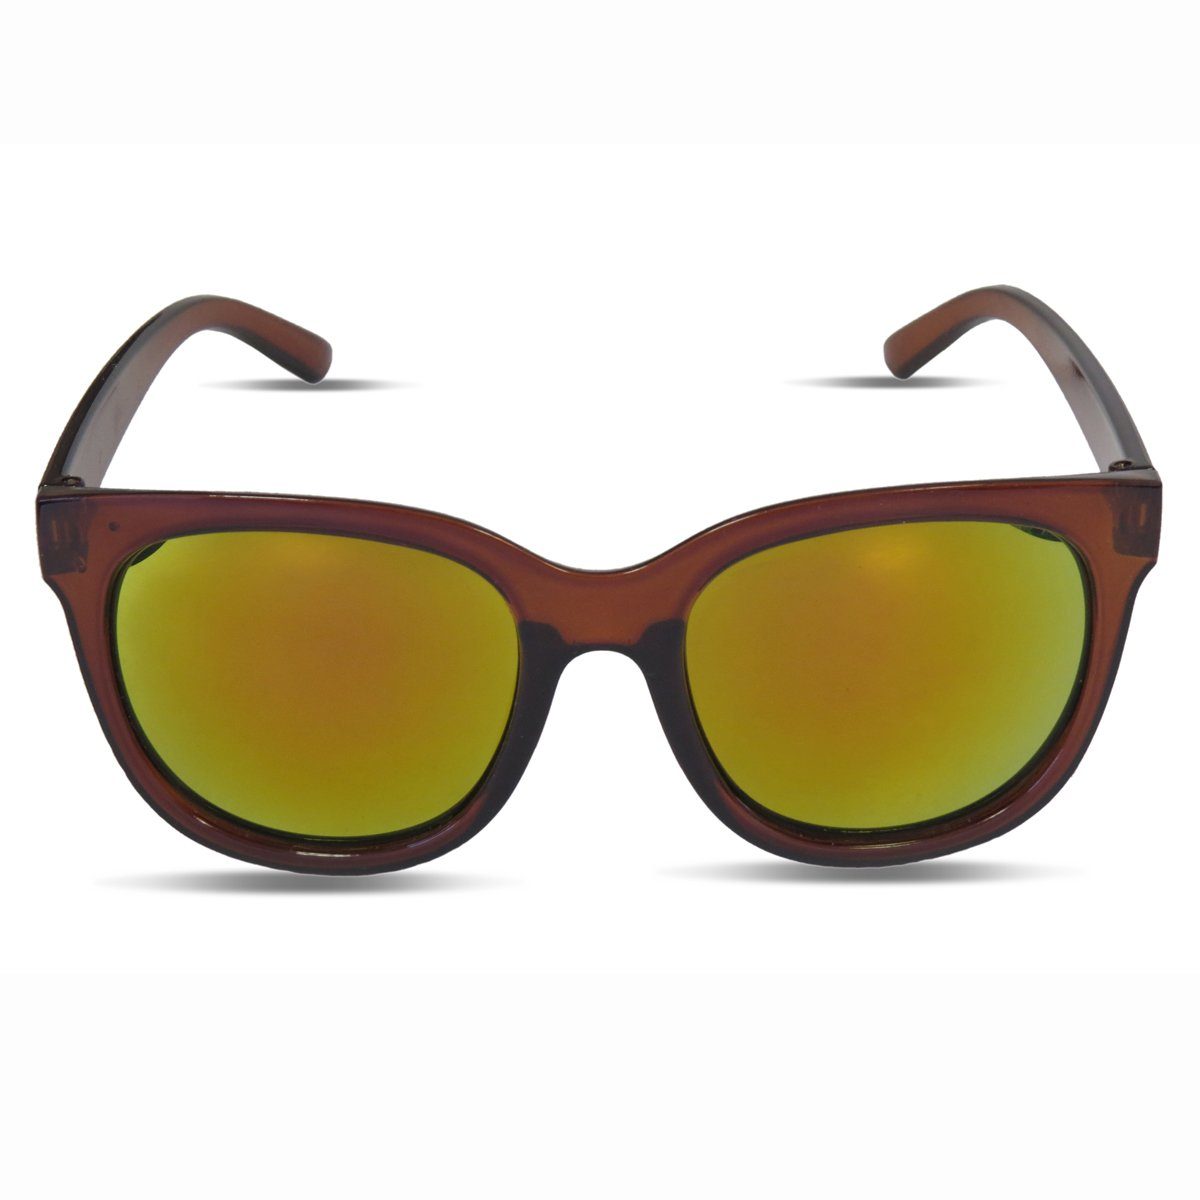 Sonia Originelli Sonnenbrille Sonnenbrille Agent Verspiegelt Sommer Fun Brille UV 400 verspiegelt braun